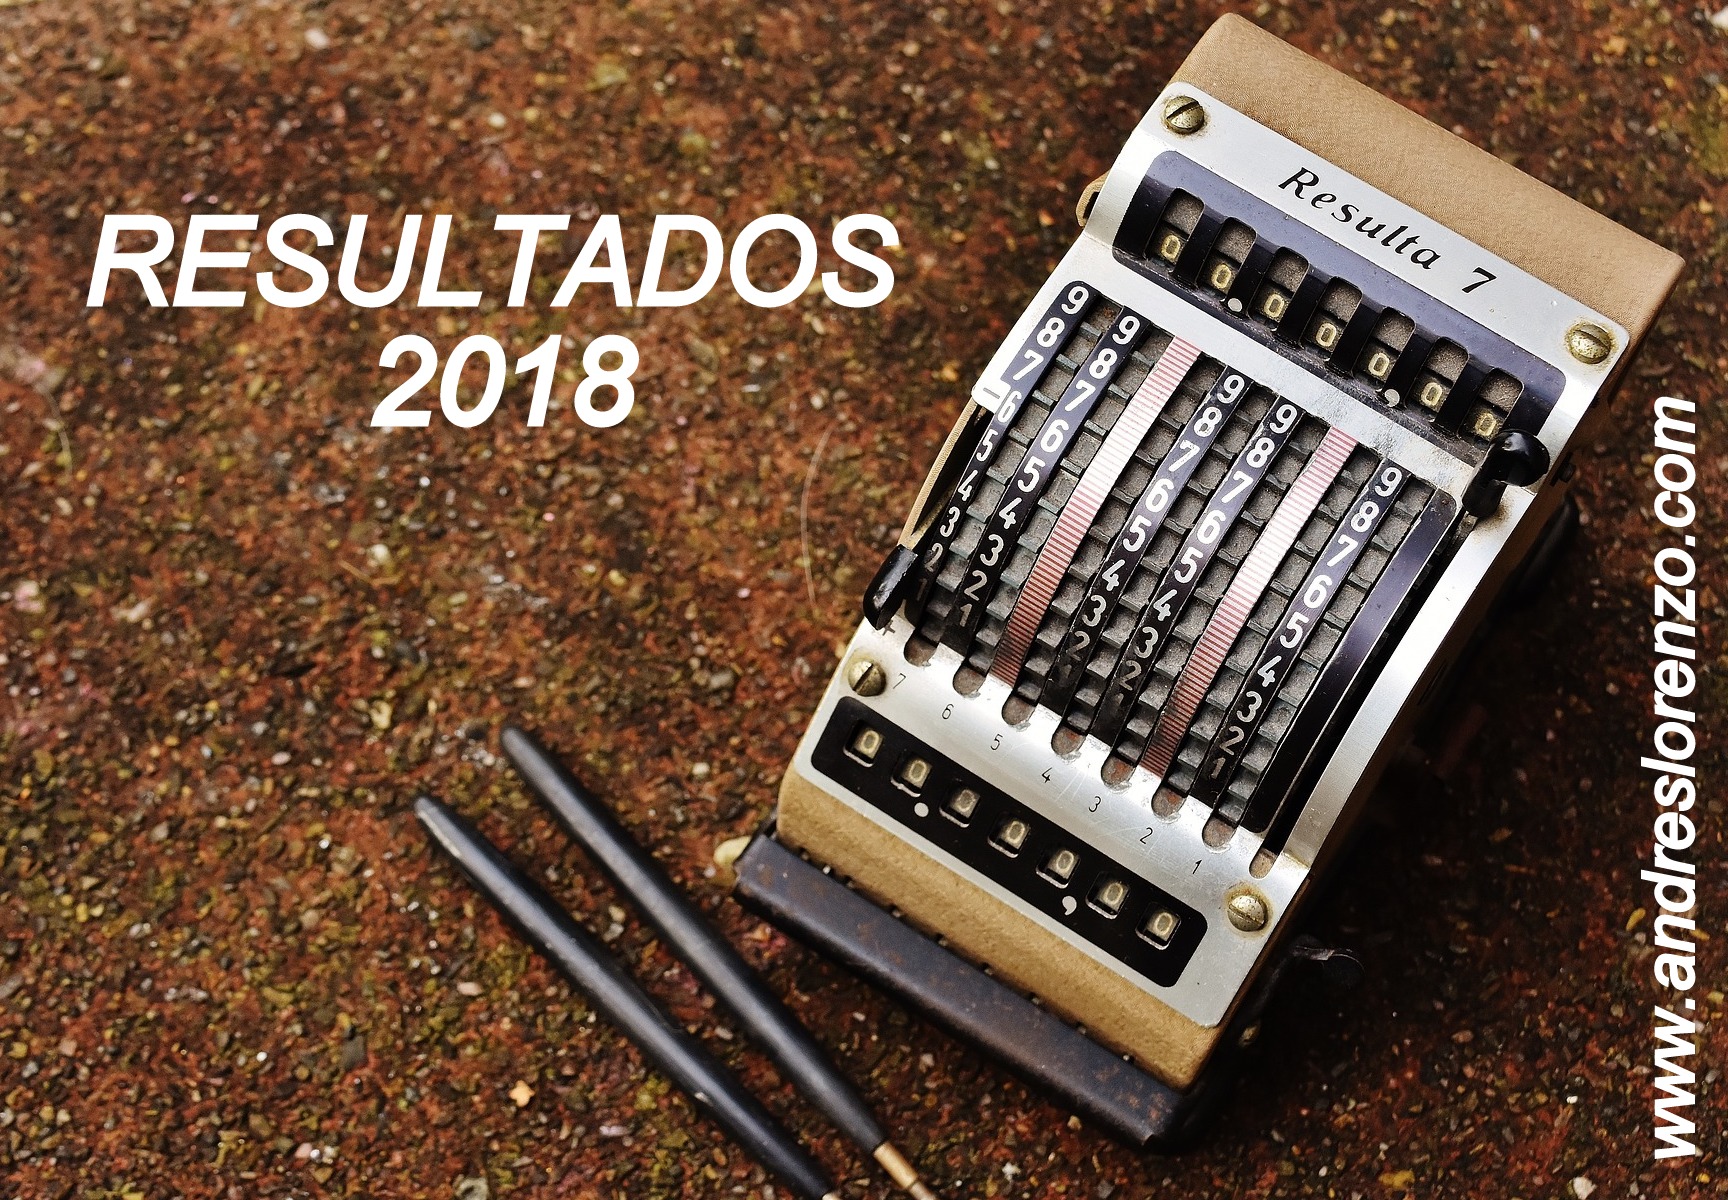 RESULTADOS 2018. CLAROSCUROS EN TIEMPOS REVUELTOS